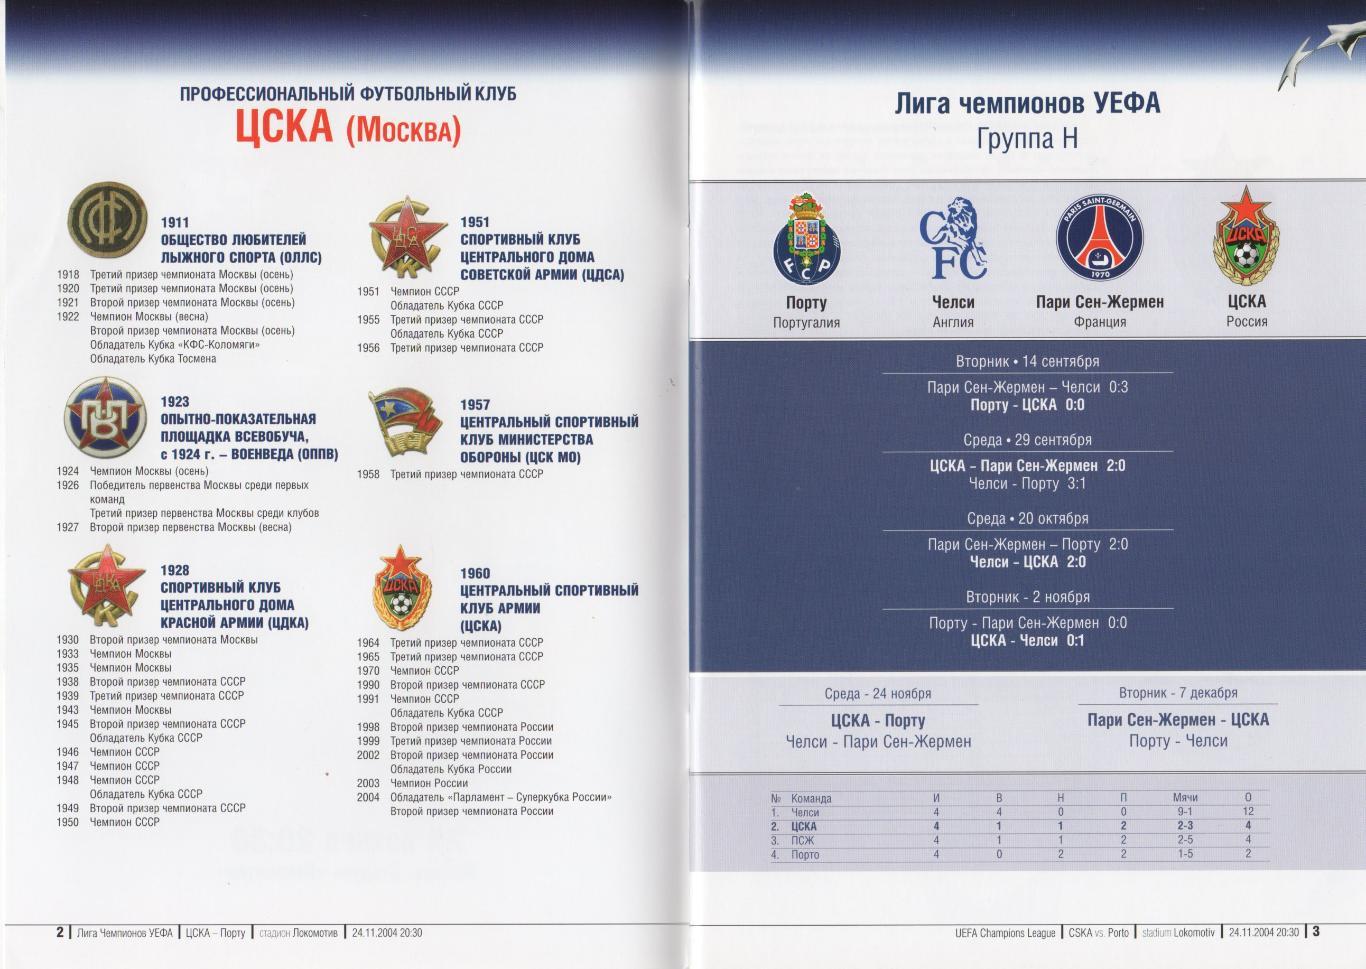 Программка матча ЦСКА - Порту Португалия. 24 ноября 2004 г. Кубок Чемпионов УЕФА 1